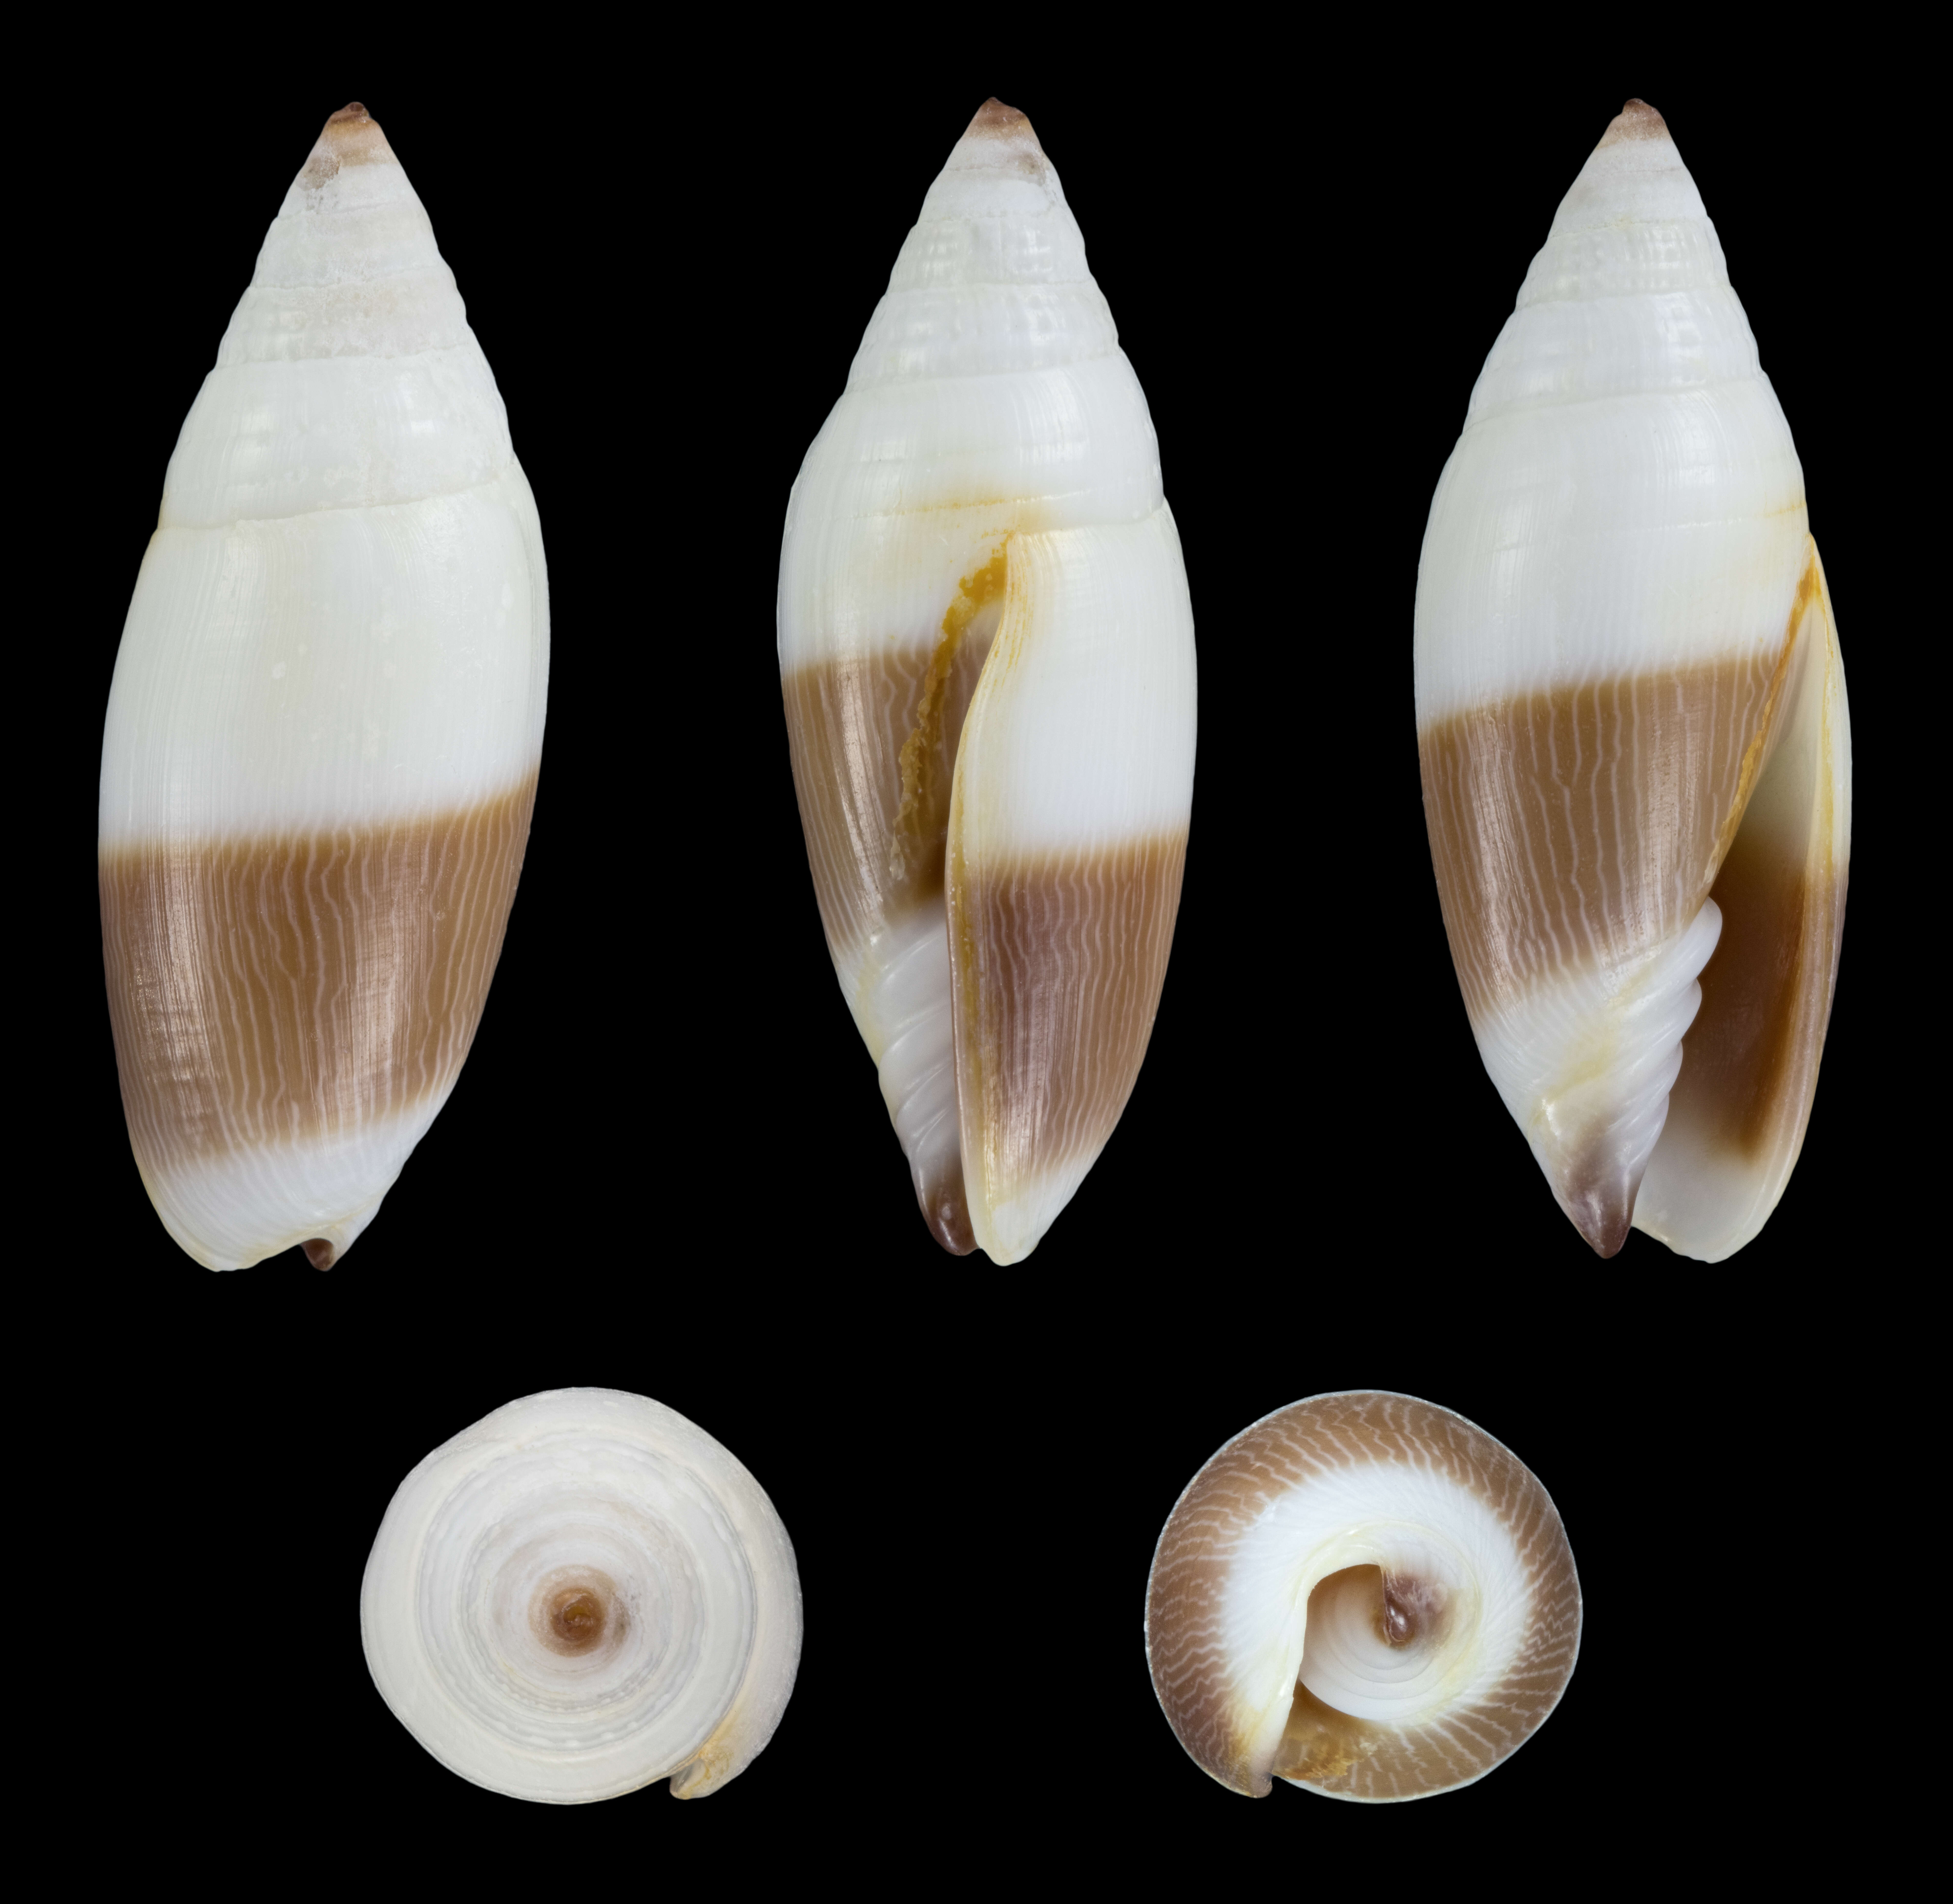 Image of Scabricola bicolor (Swainson 1824)